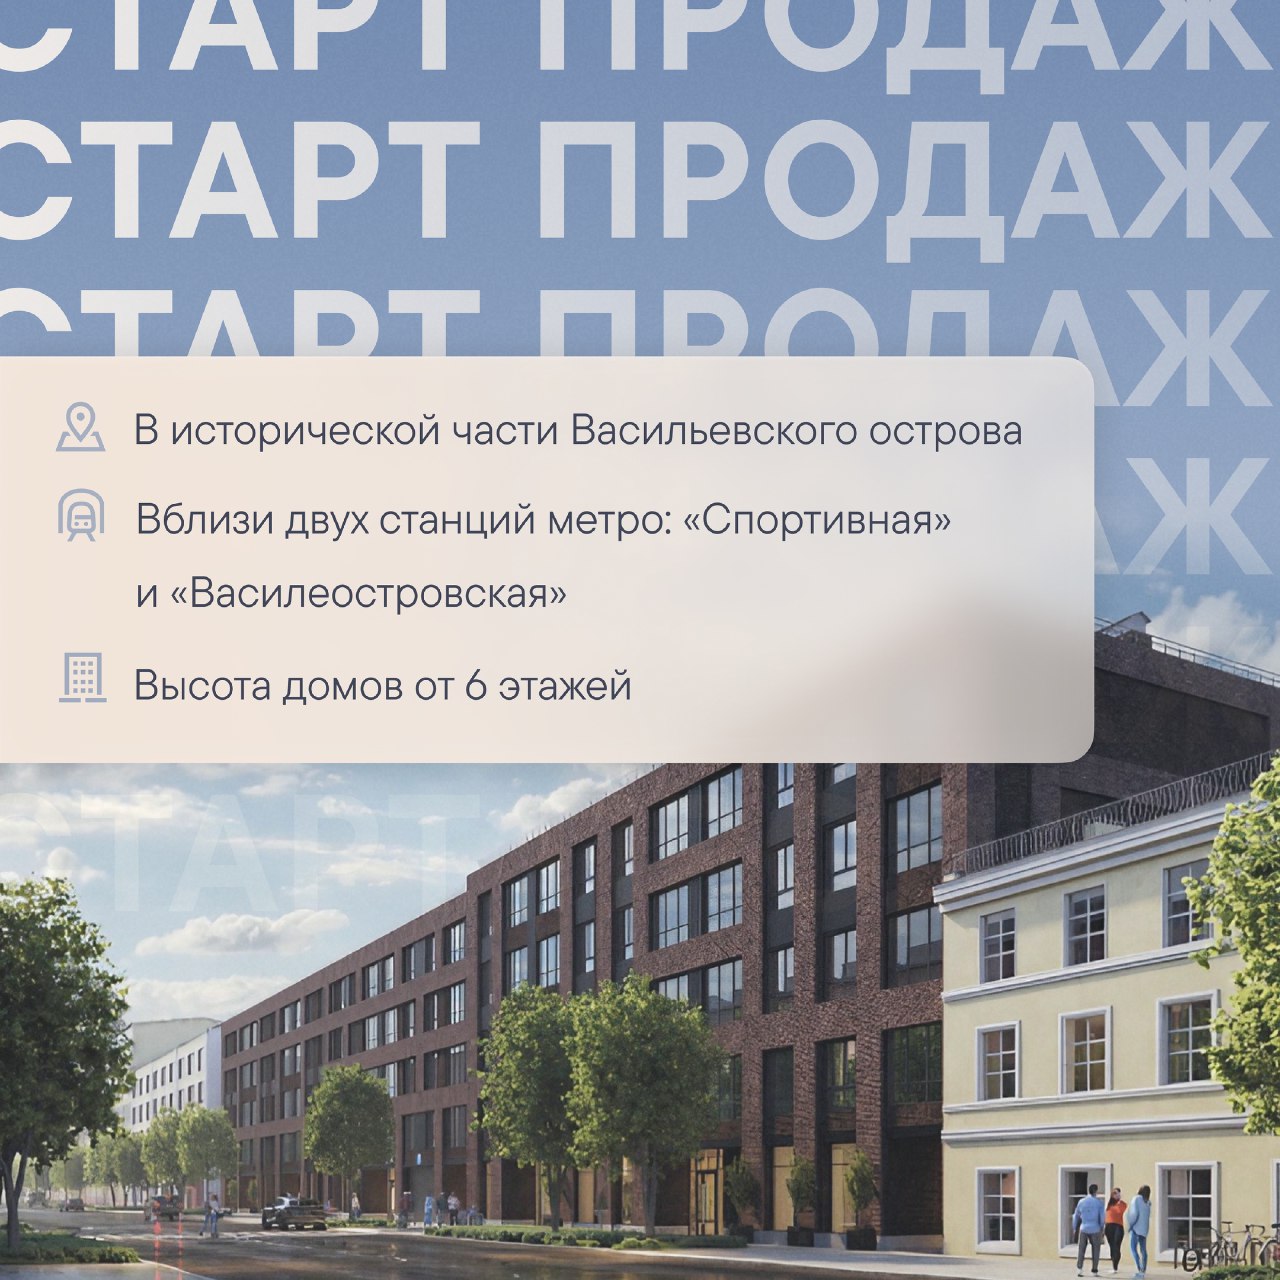 Старт продаж нового проекта на 7-й линии Васильевского острова